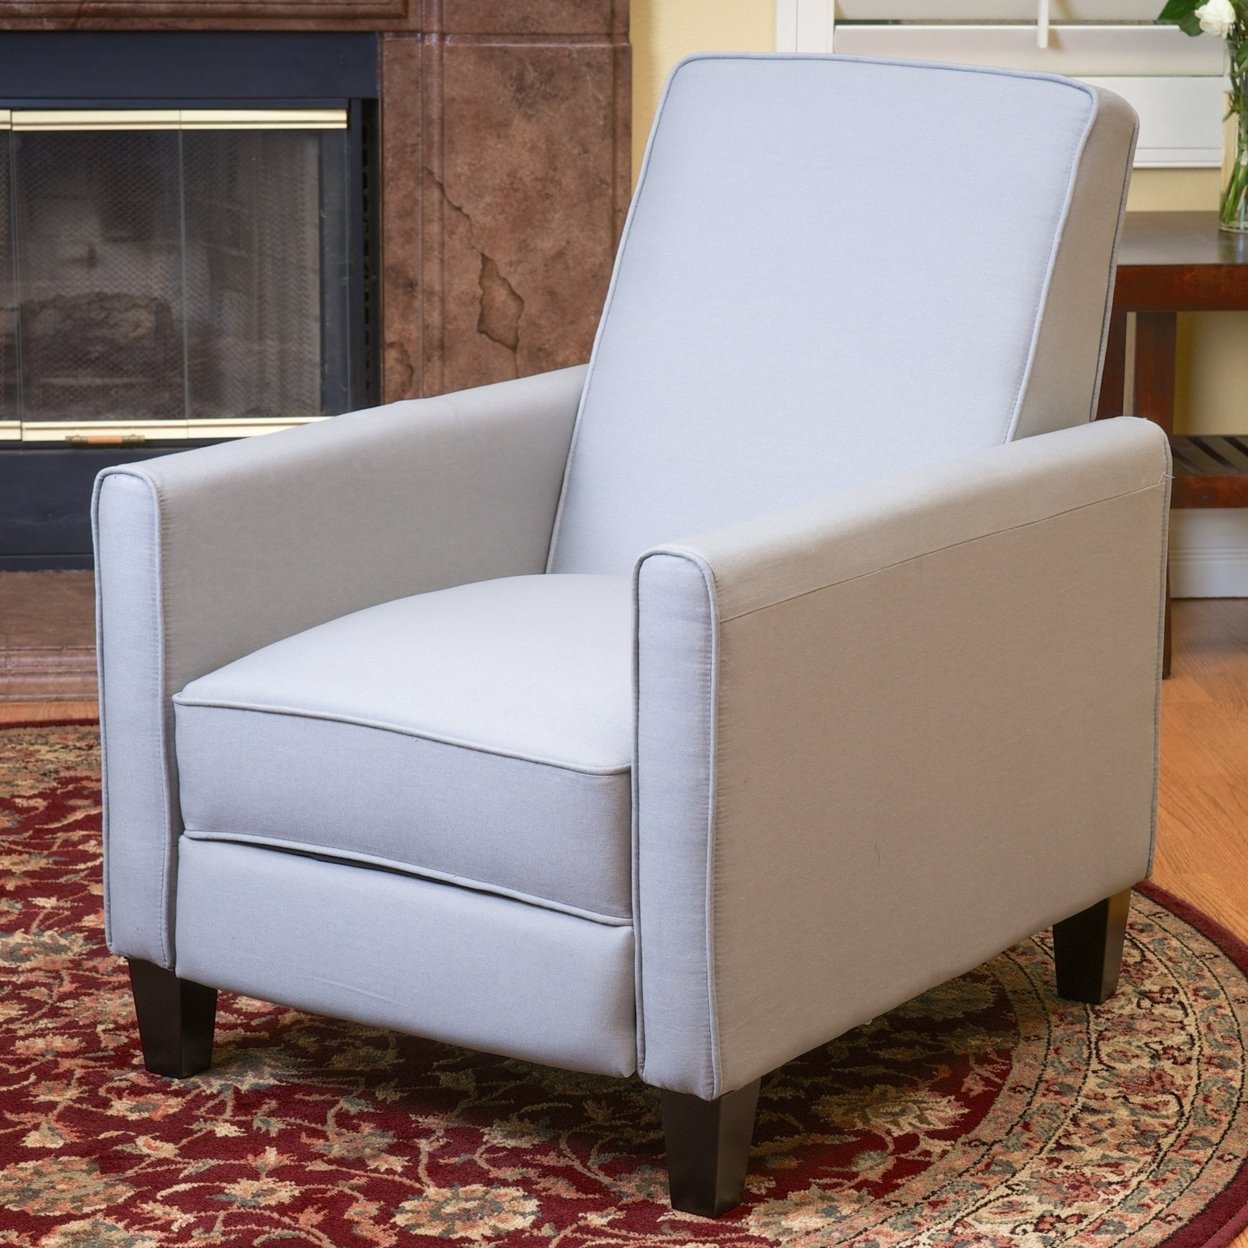 Lucas Fabric Recliner Chair - Gray